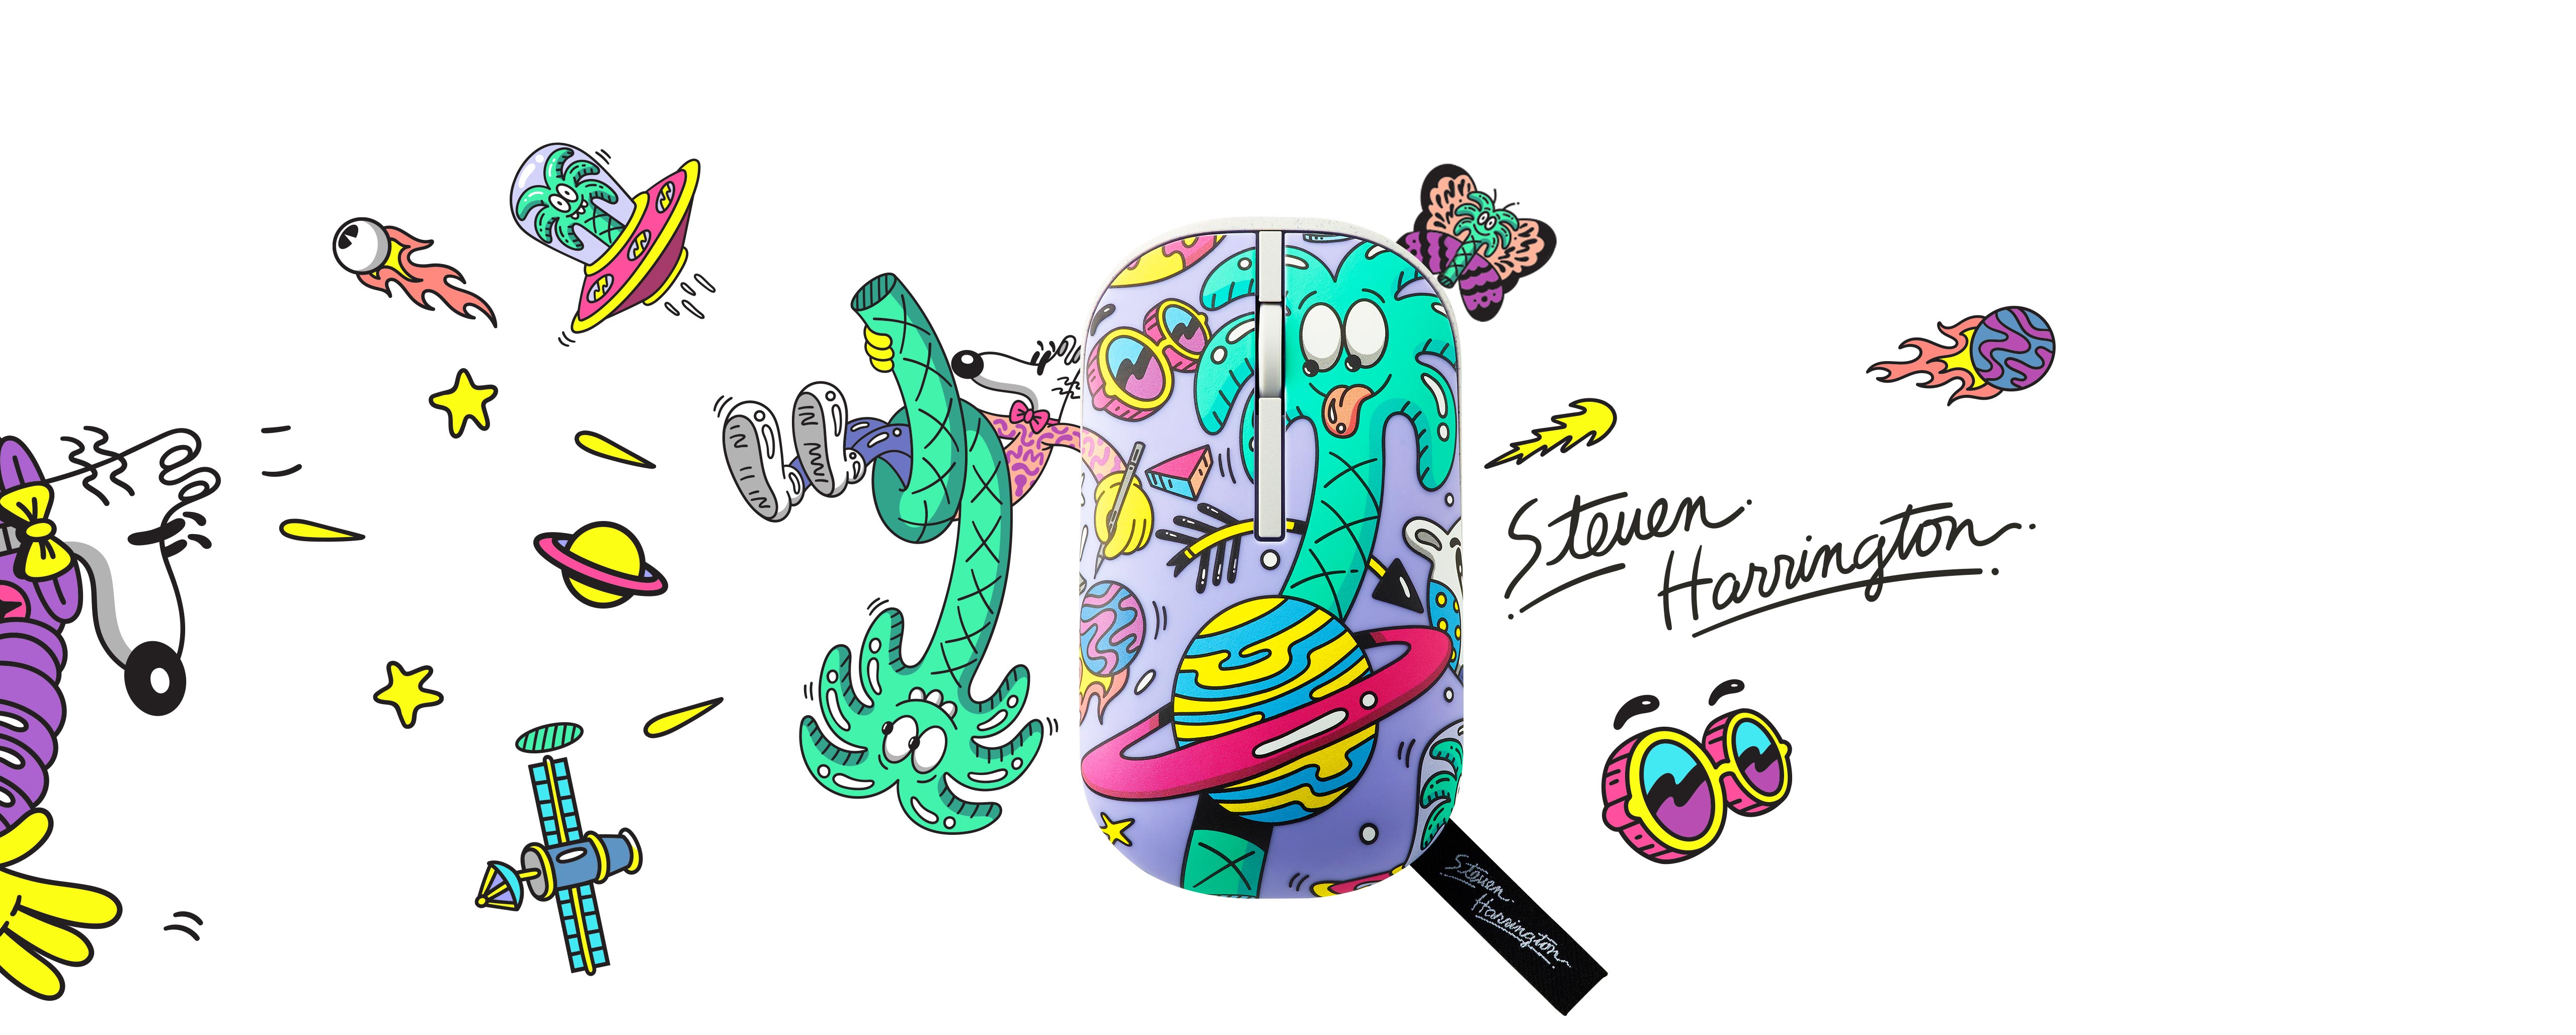 De ASUS Marshmallow Mouse MD100 Steven Harrington Edition heeft een lichtpaarse afwerking en is voorzien van zijn iconische artwork, waaronder de palmboom, bril en Saturnus. Zijn andere werken, zoals Mello, vlinder en sterren, zijn samen met zijn handtekening ook op de pagina te vinden.